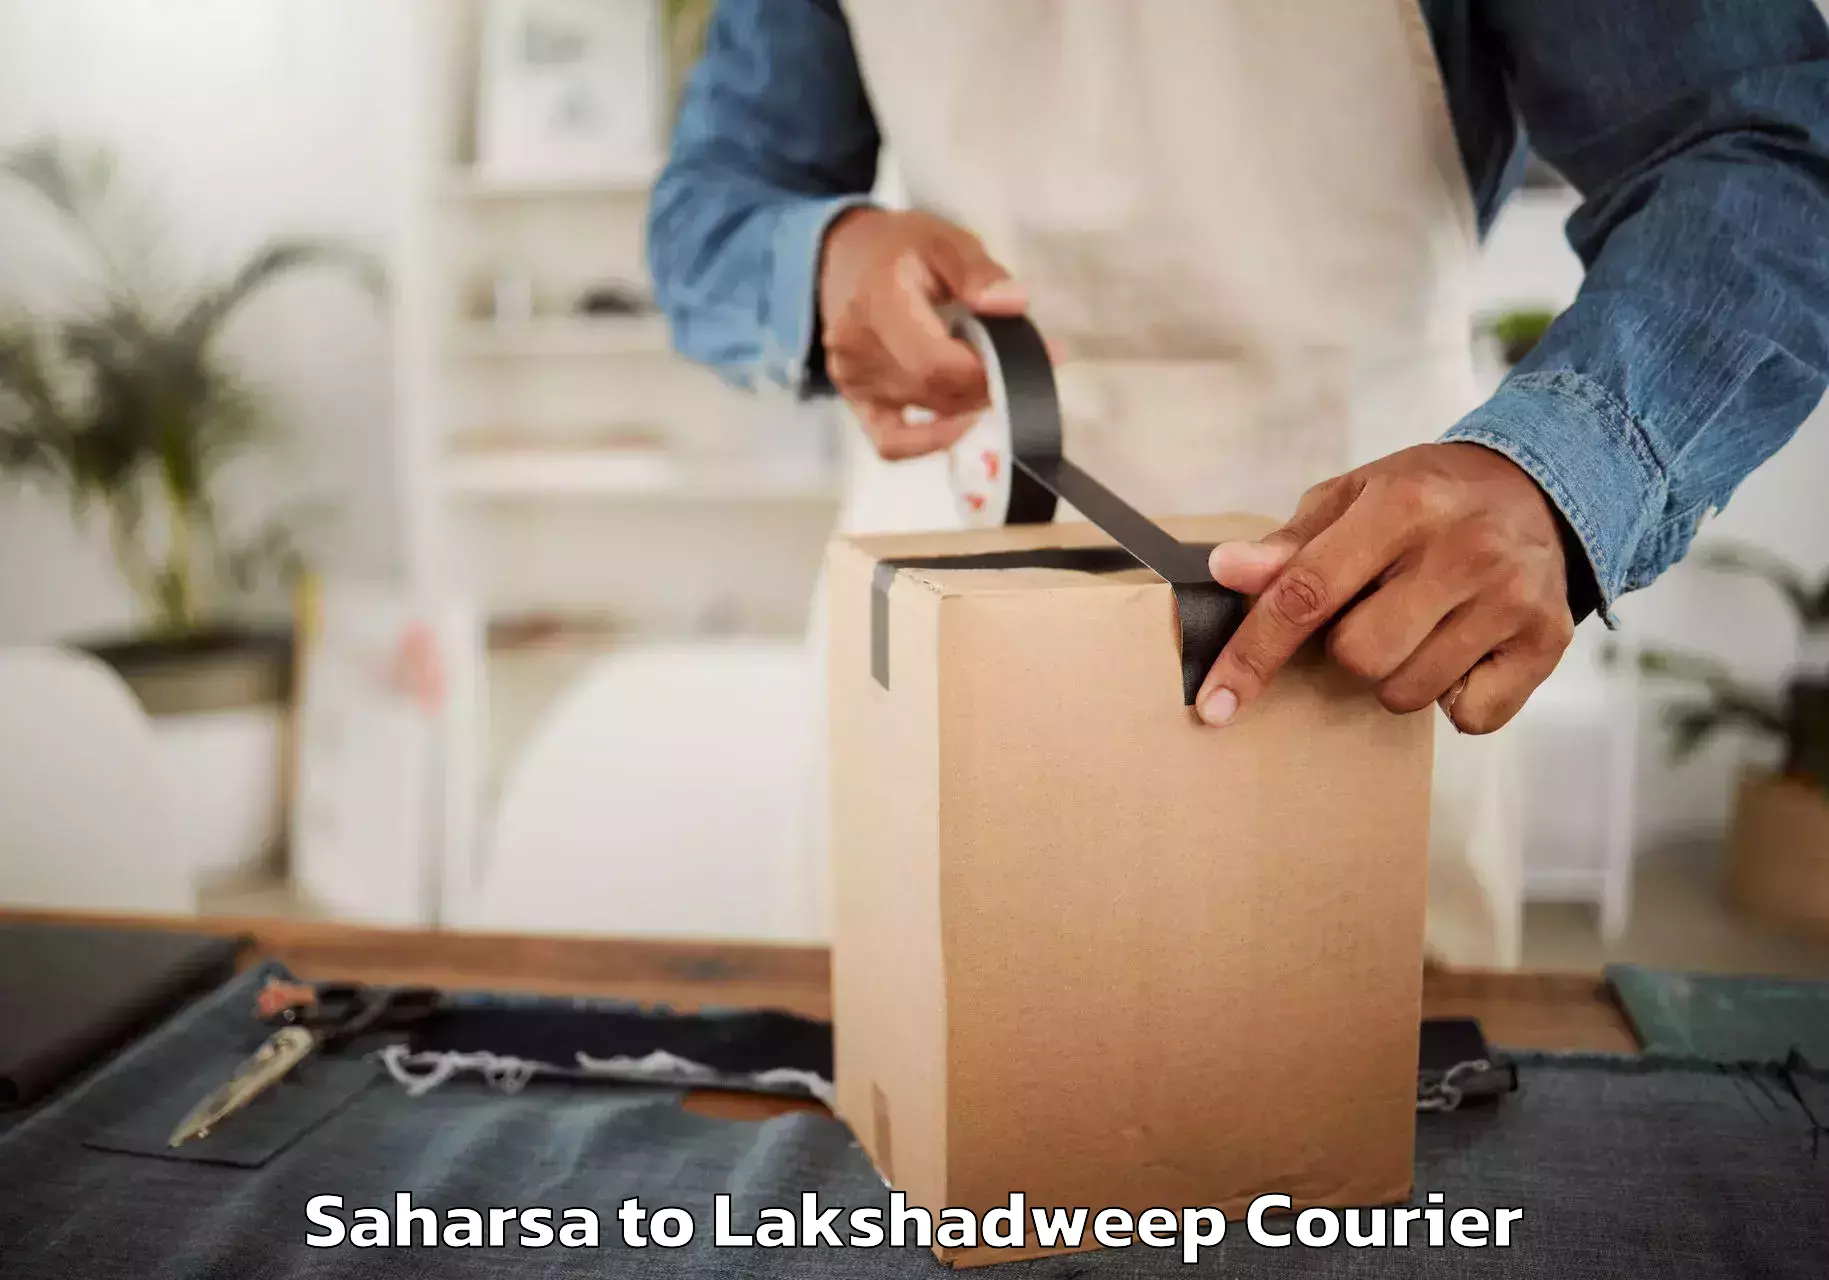 Furniture transport service Saharsa to Lakshadweep